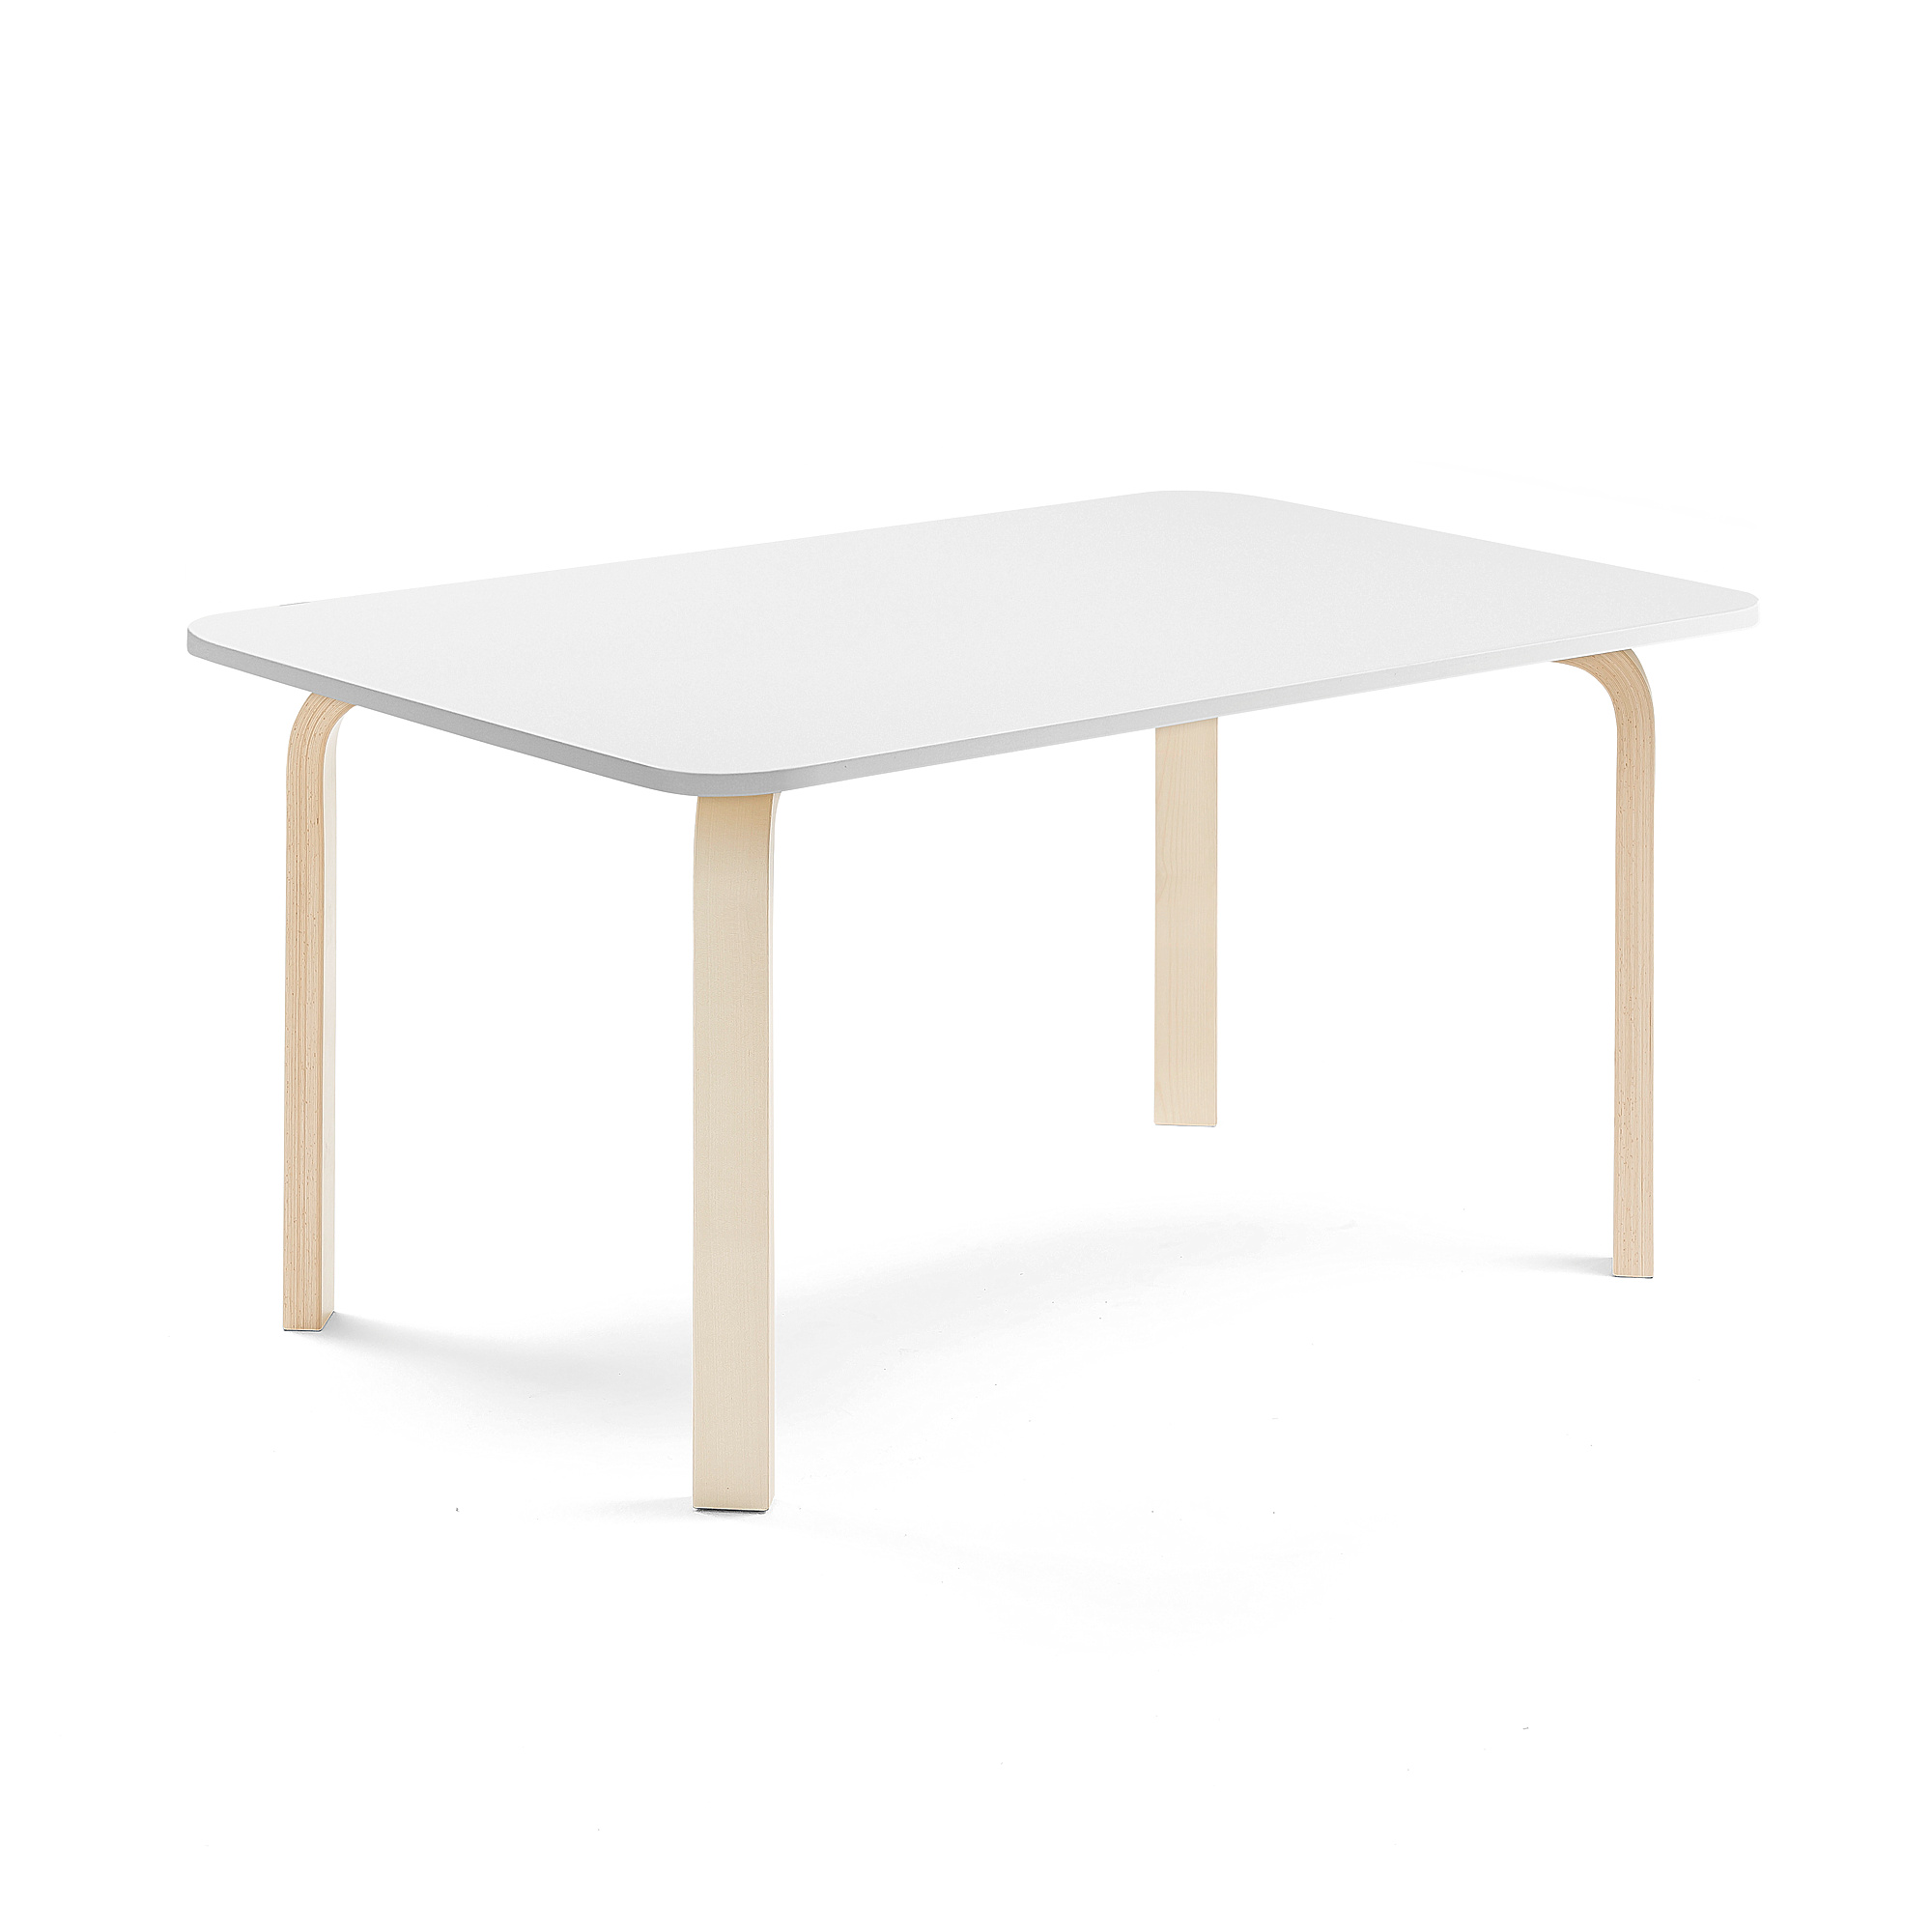 Stůl ELTON, 1200x800x590 mm, bříza, akustická HPL deska, bílá